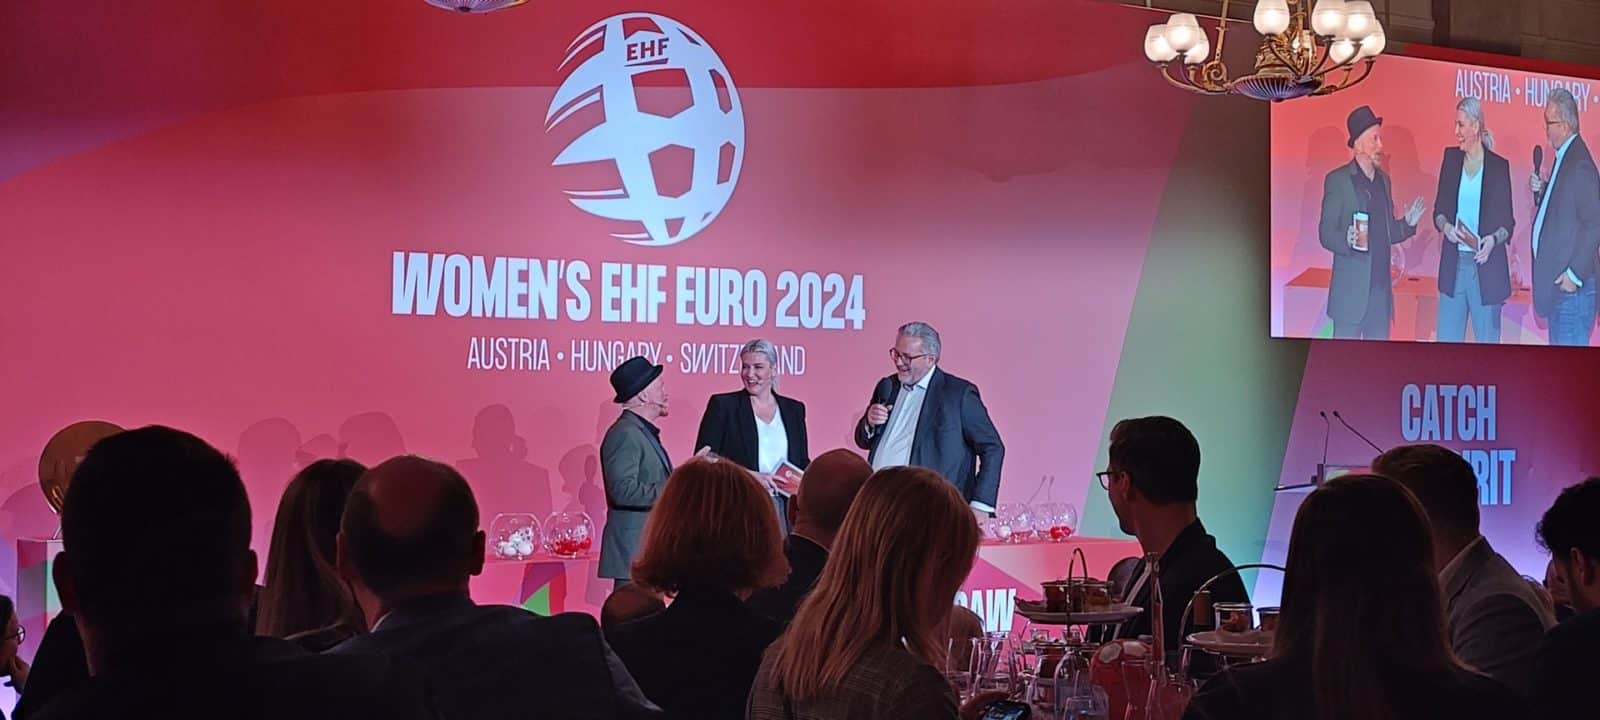 Womans EHF EURO 2024 Agentur Neutor